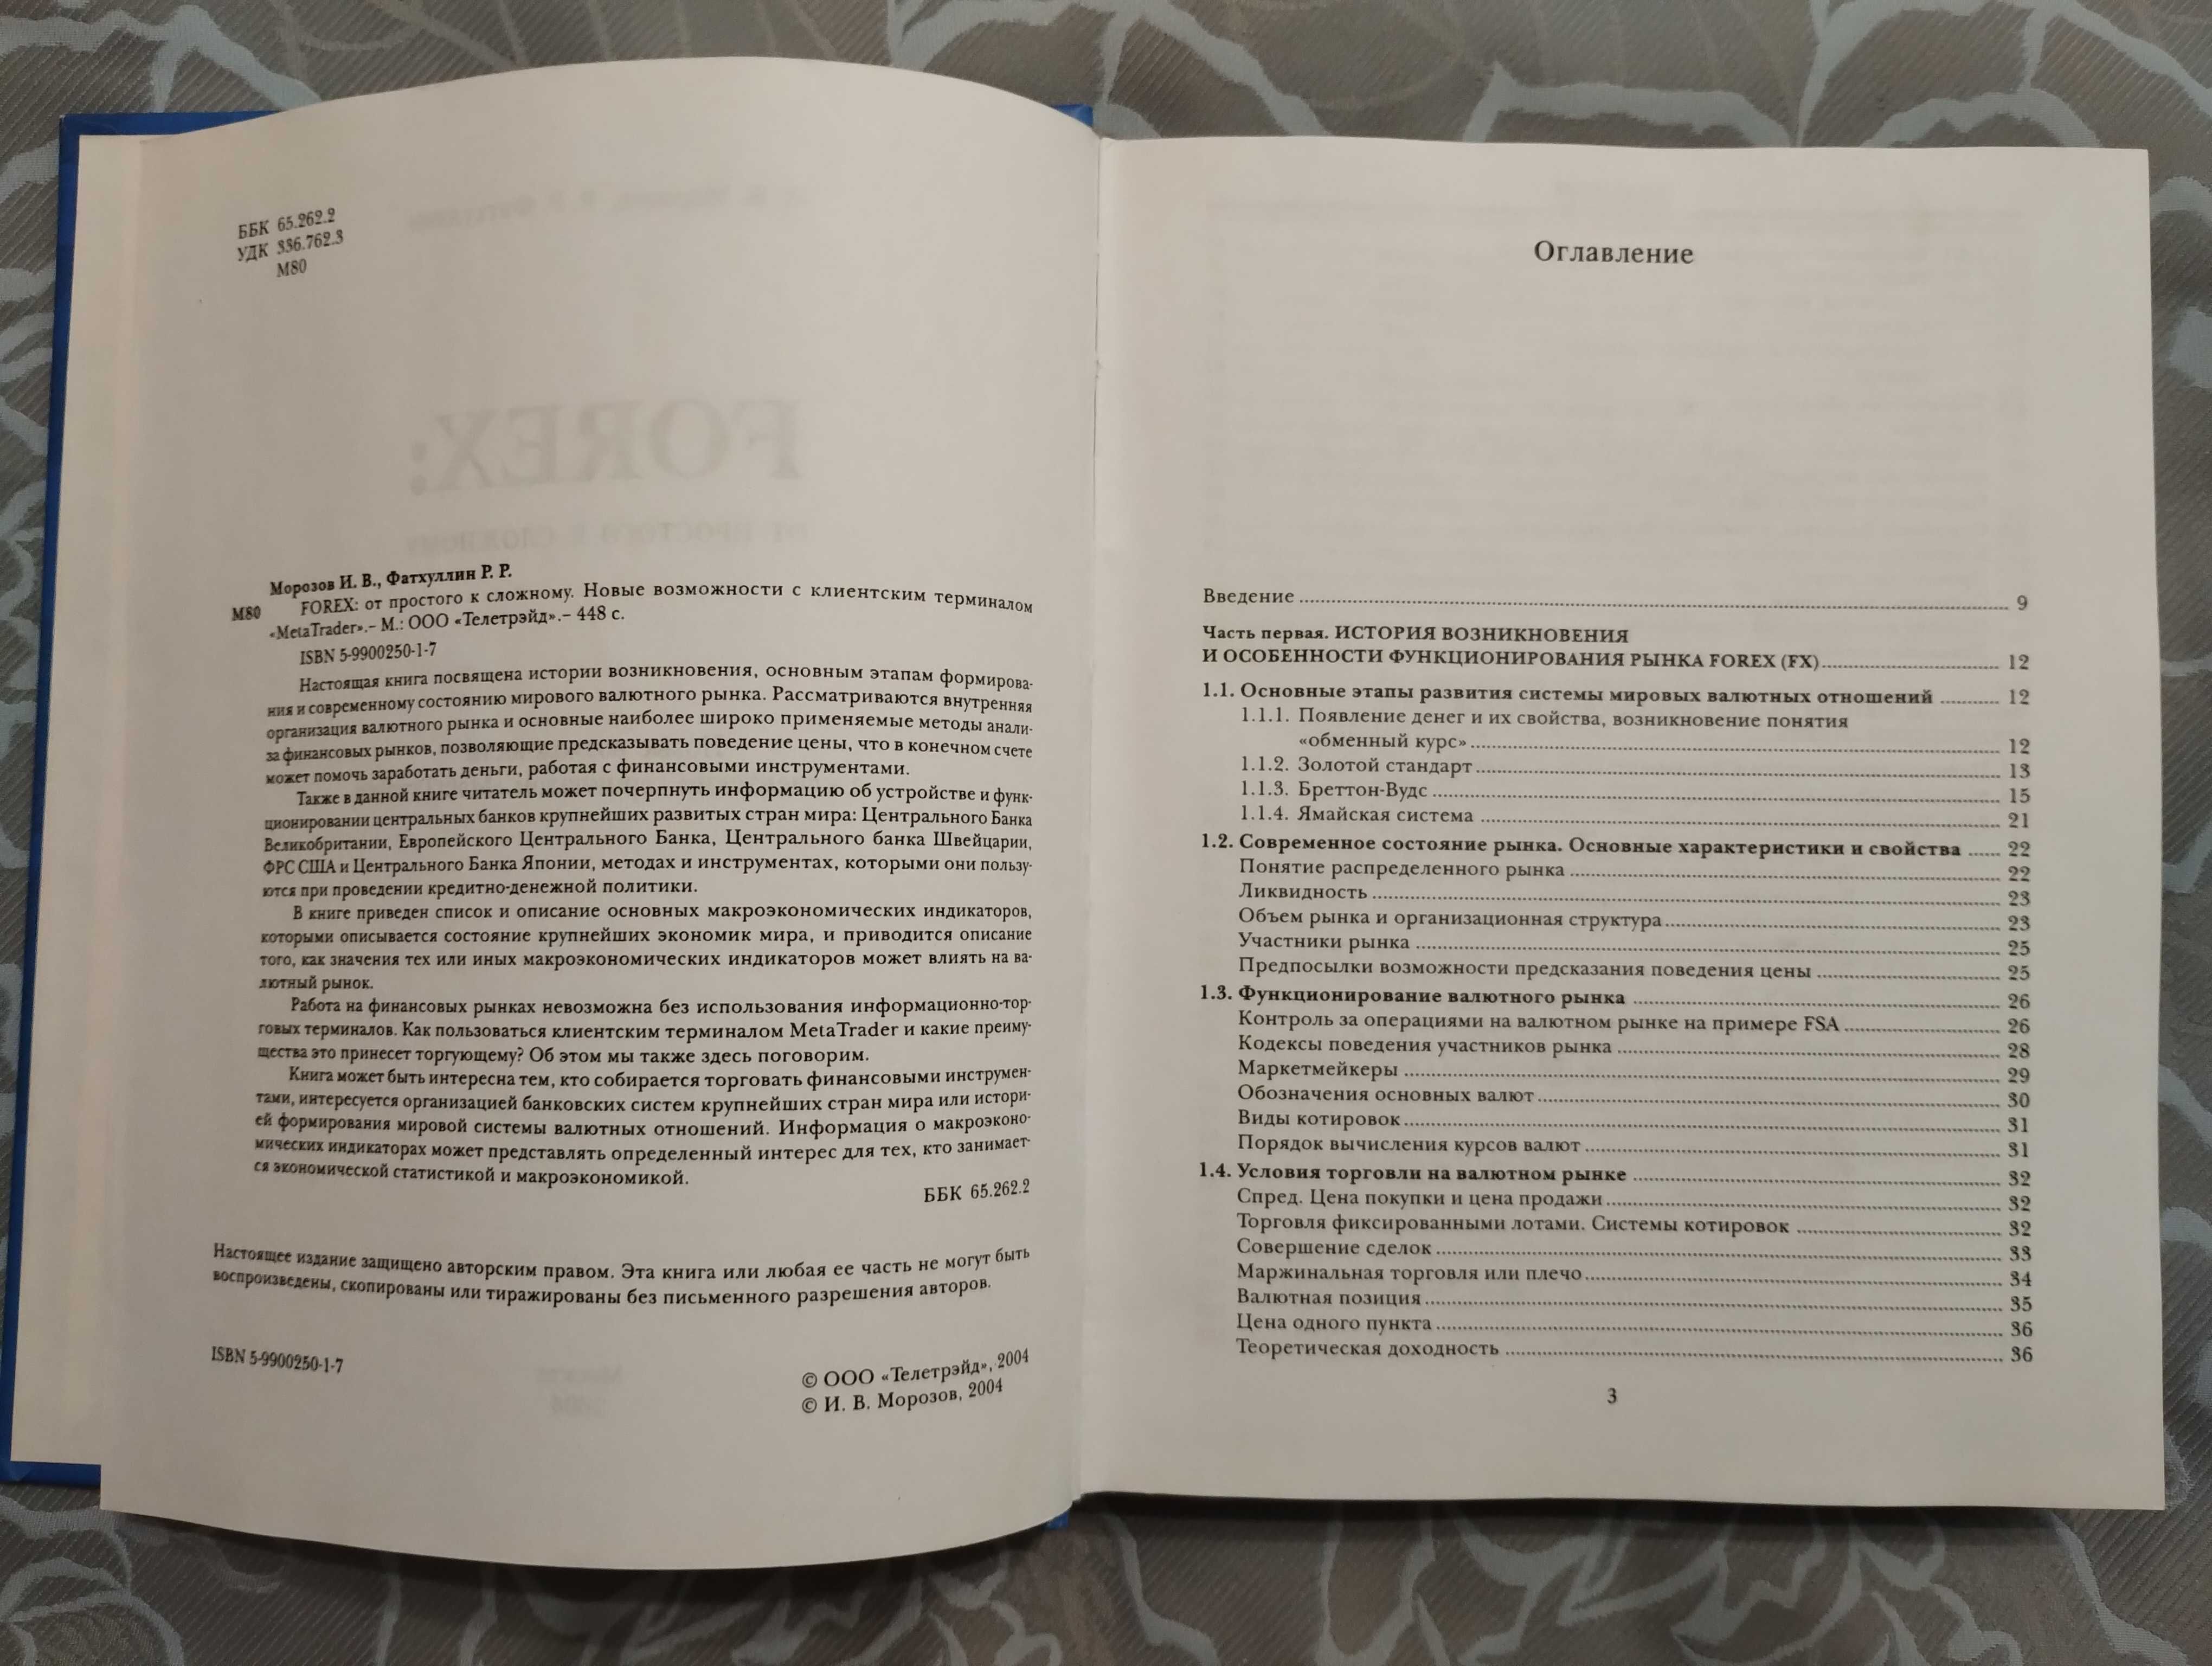 Книга "Forex: от простого к сложному" Морозов, Фатхуллин 2004 год